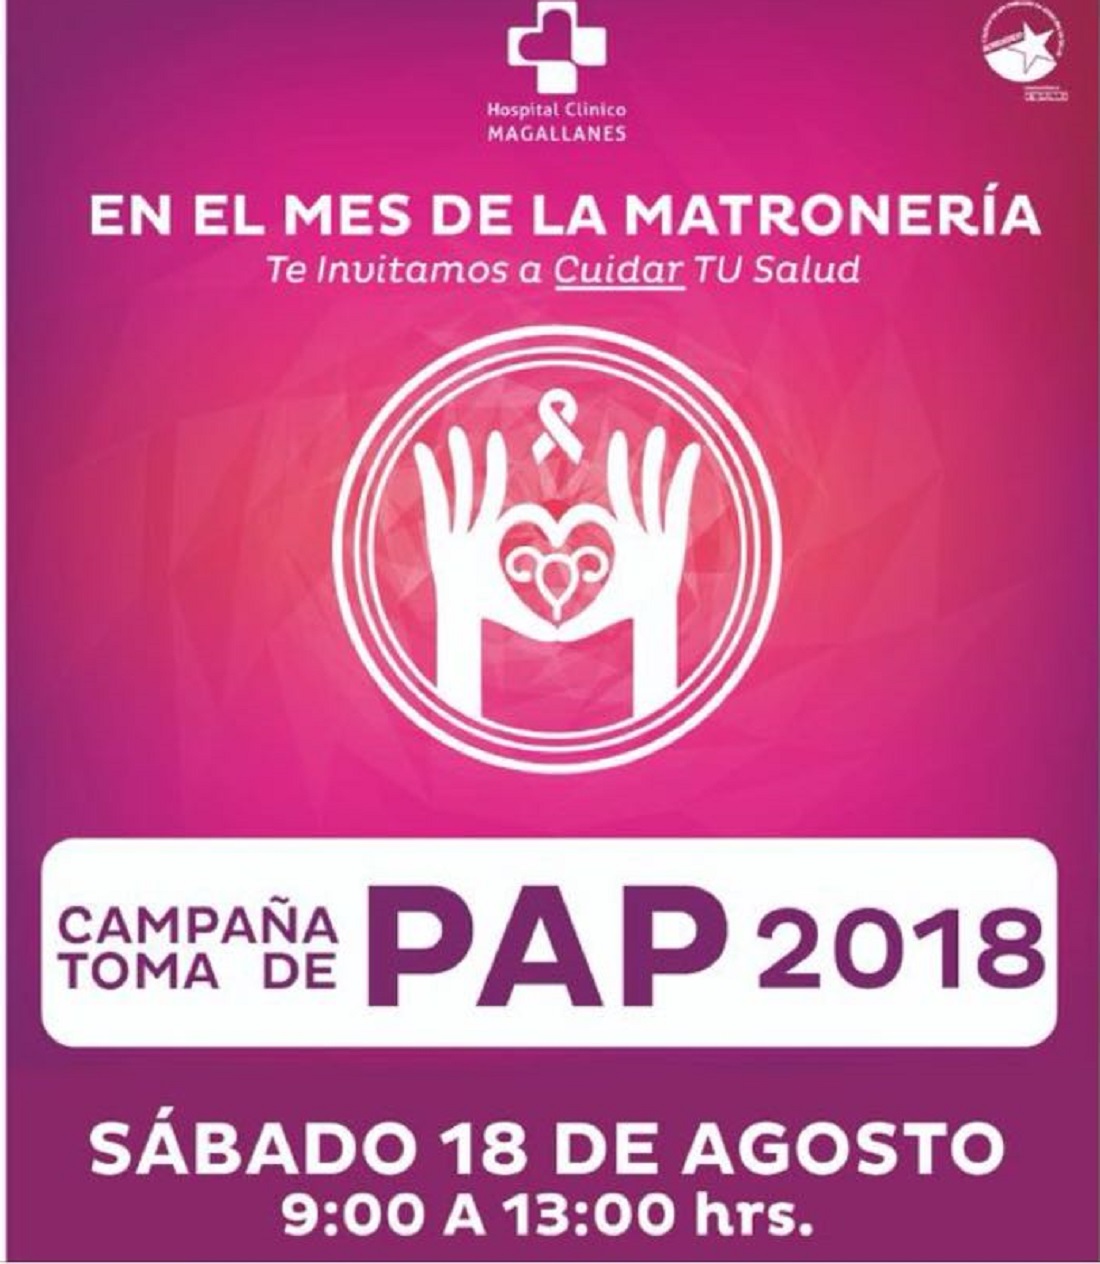 Campaña de Toma de PAP 2018 en Punta Arenas